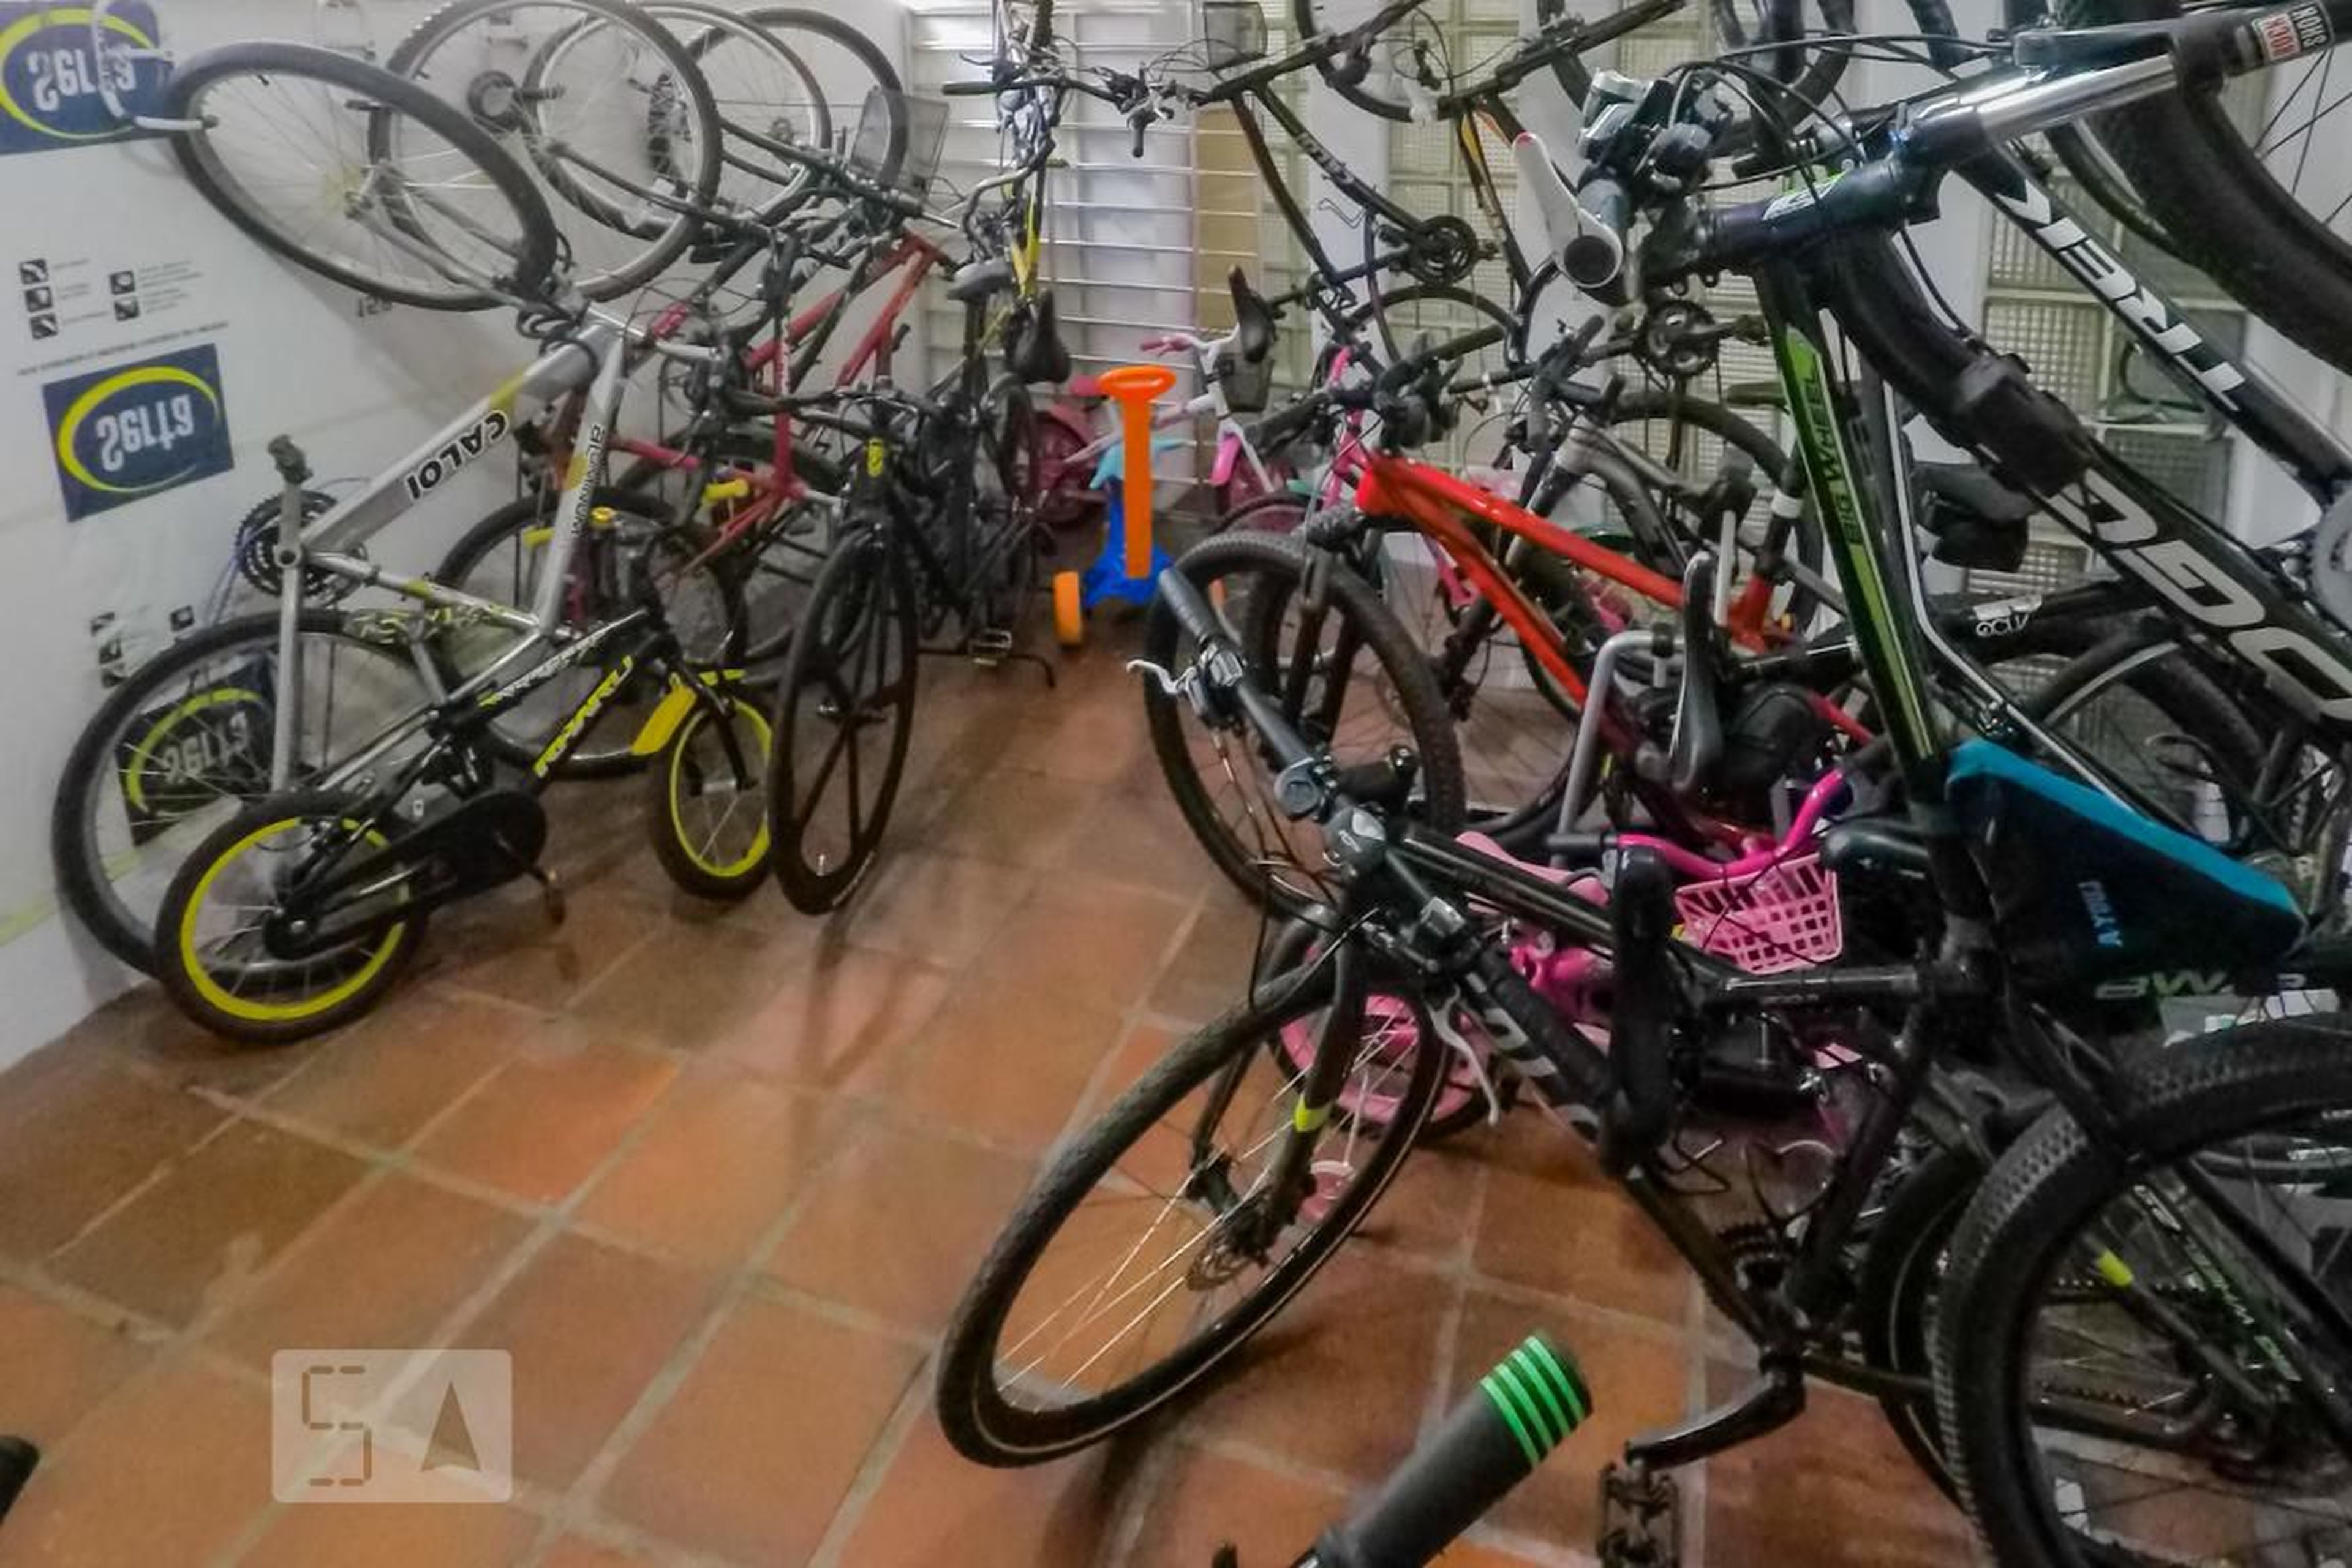 Bicicletario - Ciomara